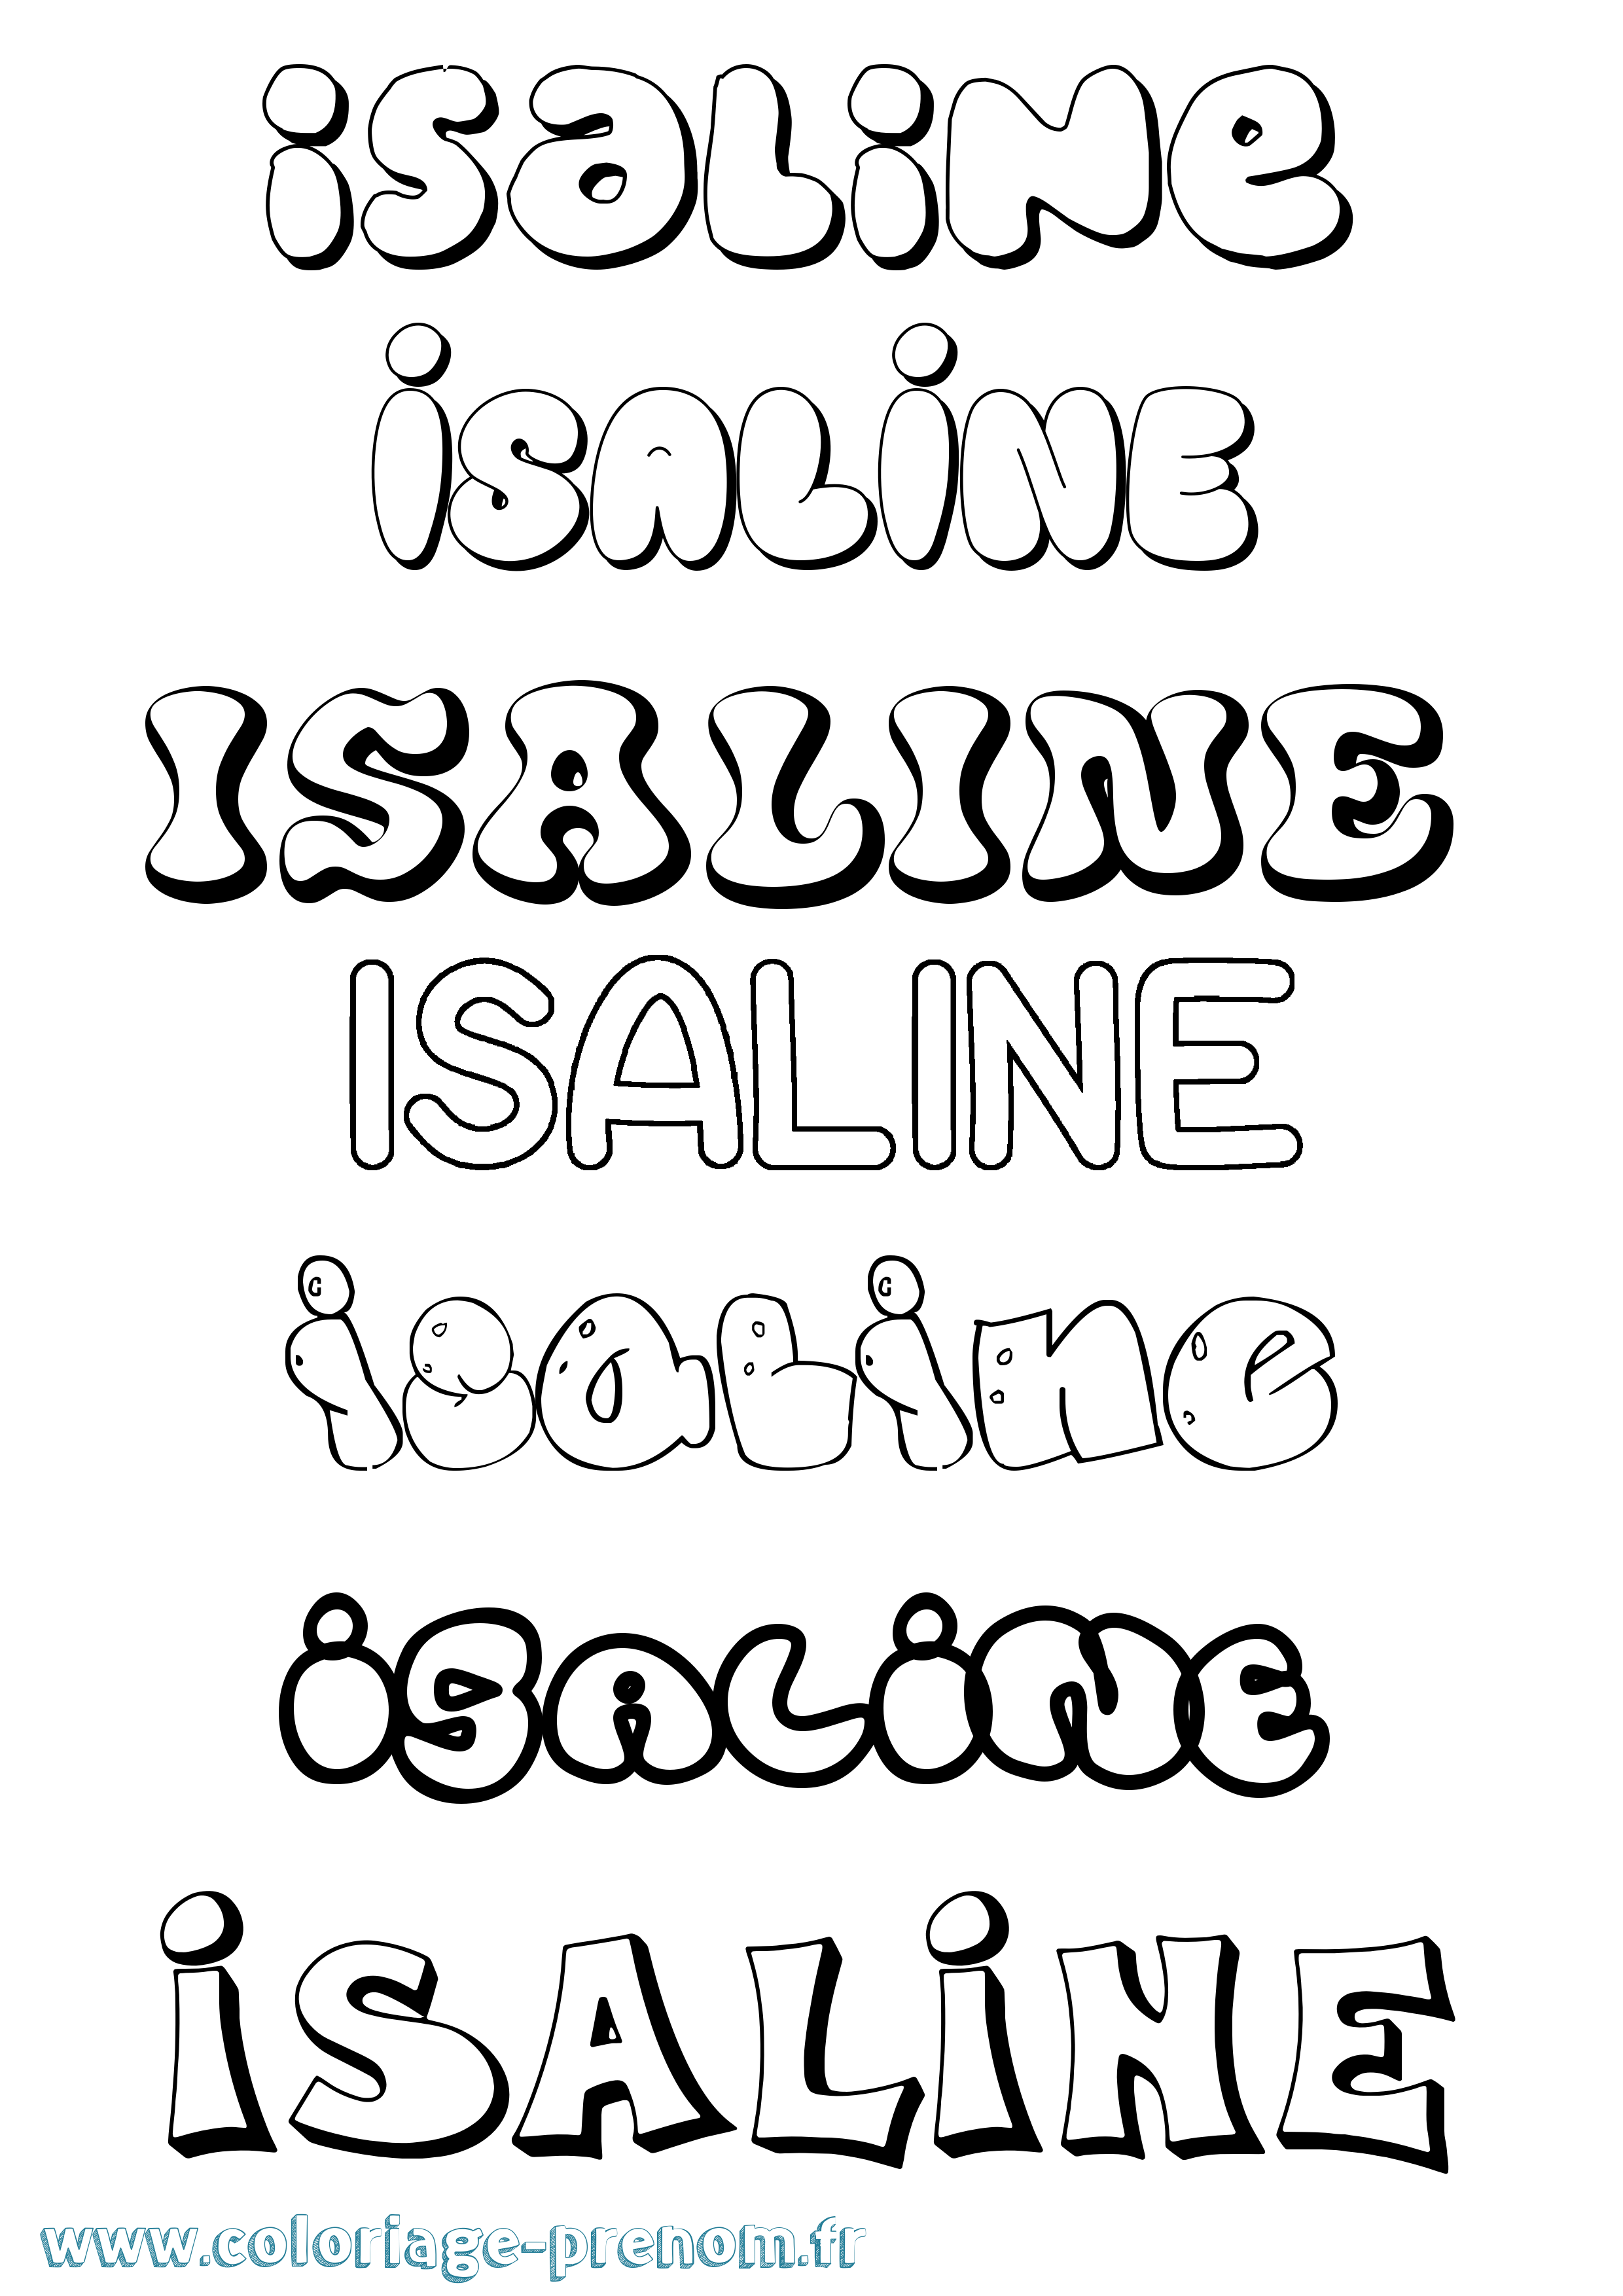 Coloriage prénom Isaline Bubble